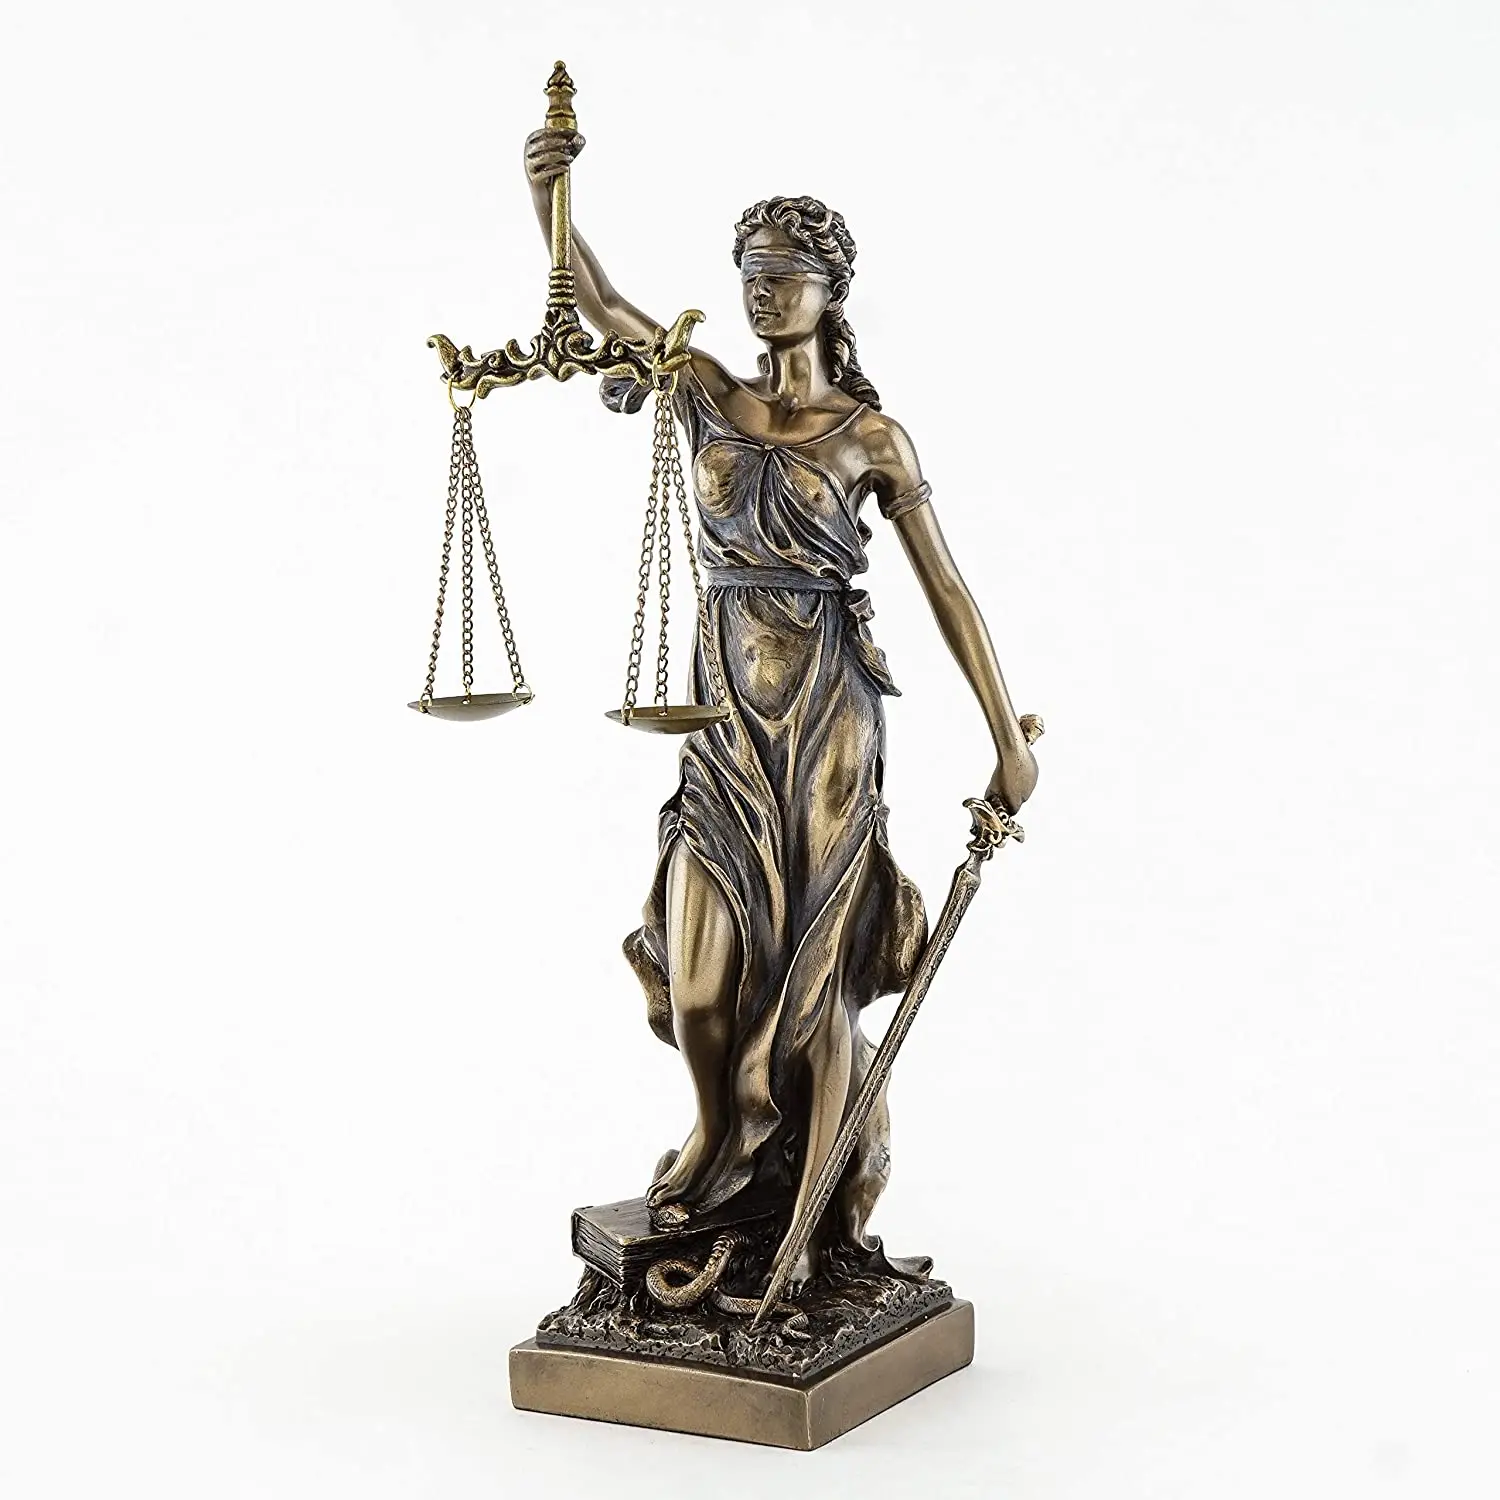 

Лучшая коллекция, статуя леди справедливости-Искусственная богиня справедливости (12,5 дюйма)